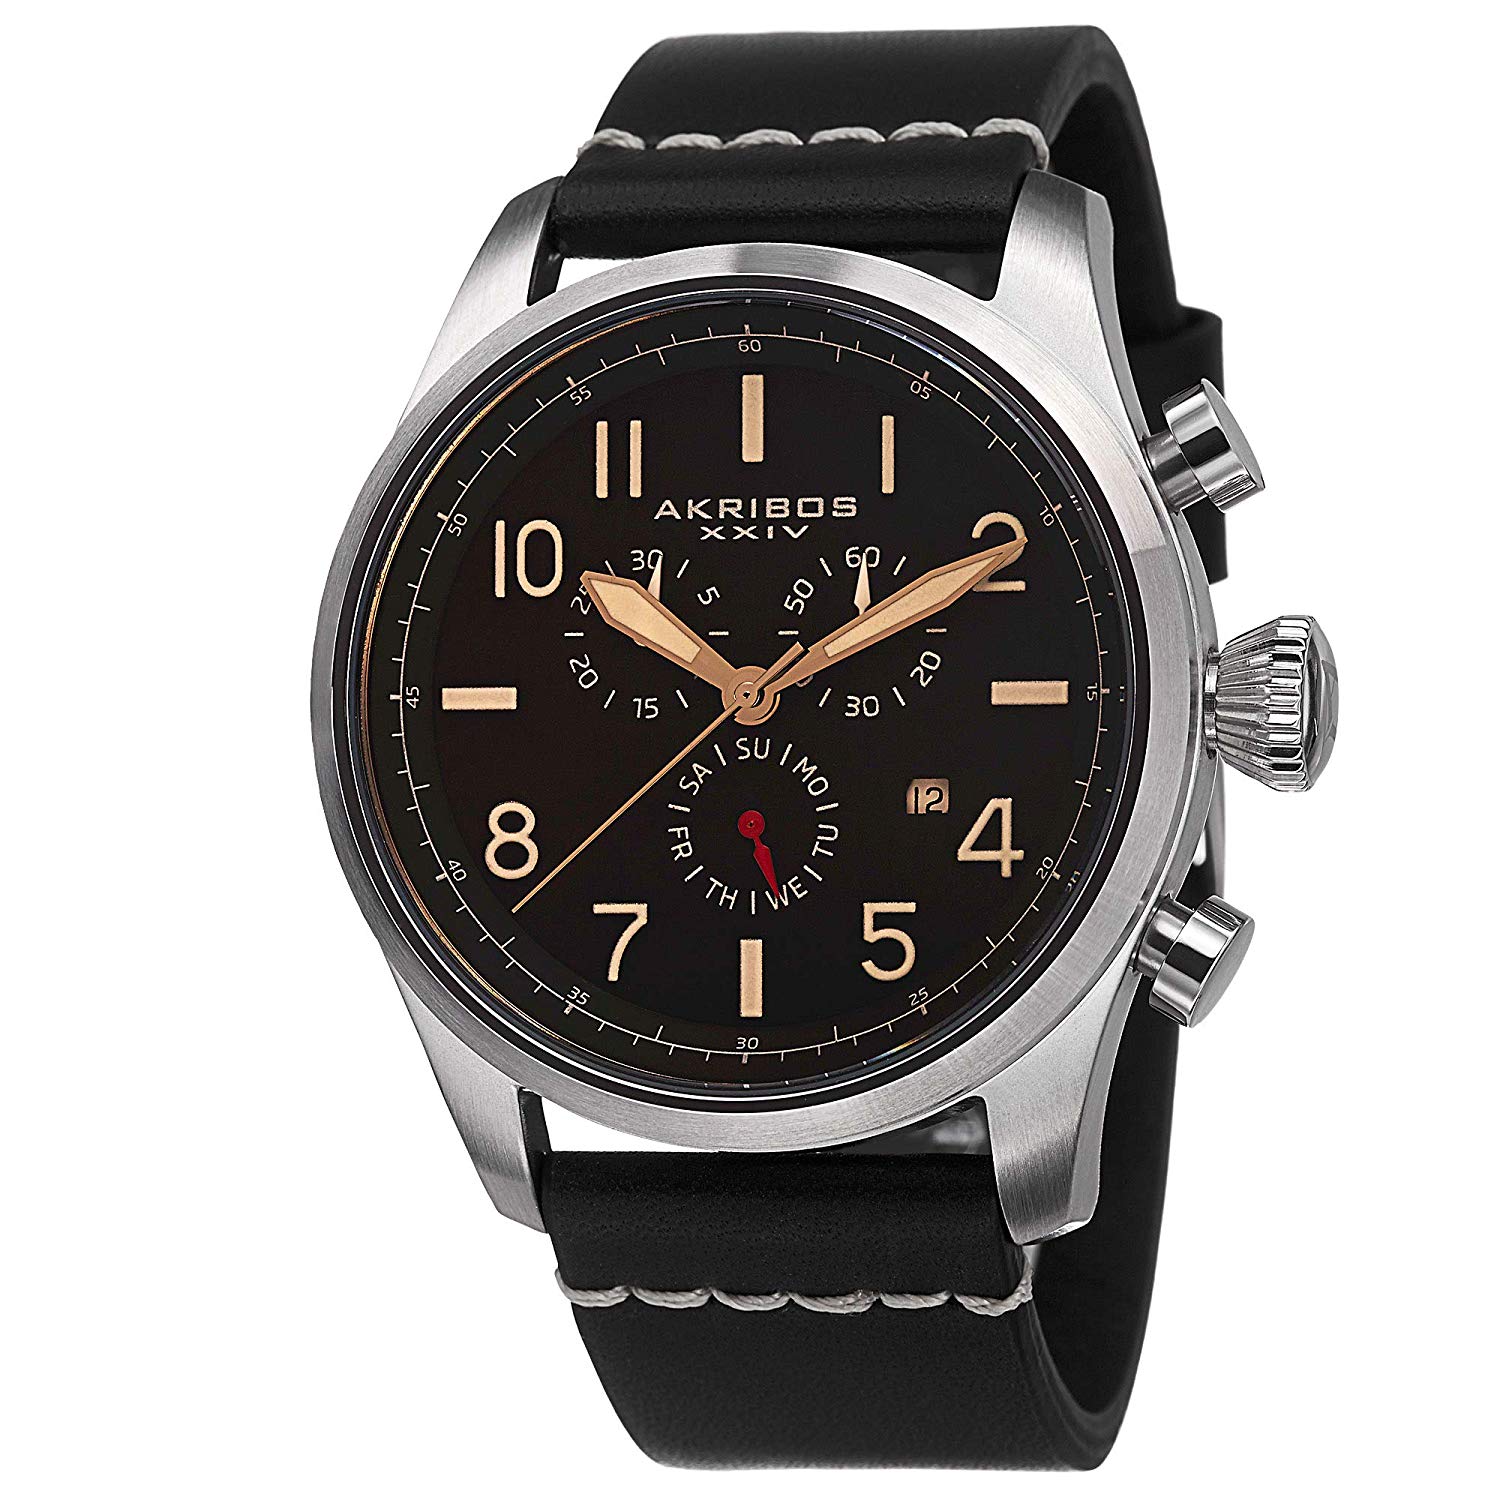 Akribos XXIV Men’s AK705SSB “Ultimate” Stainless Steel Watch with Black Akribos Xxiv Stainless Steel Watch